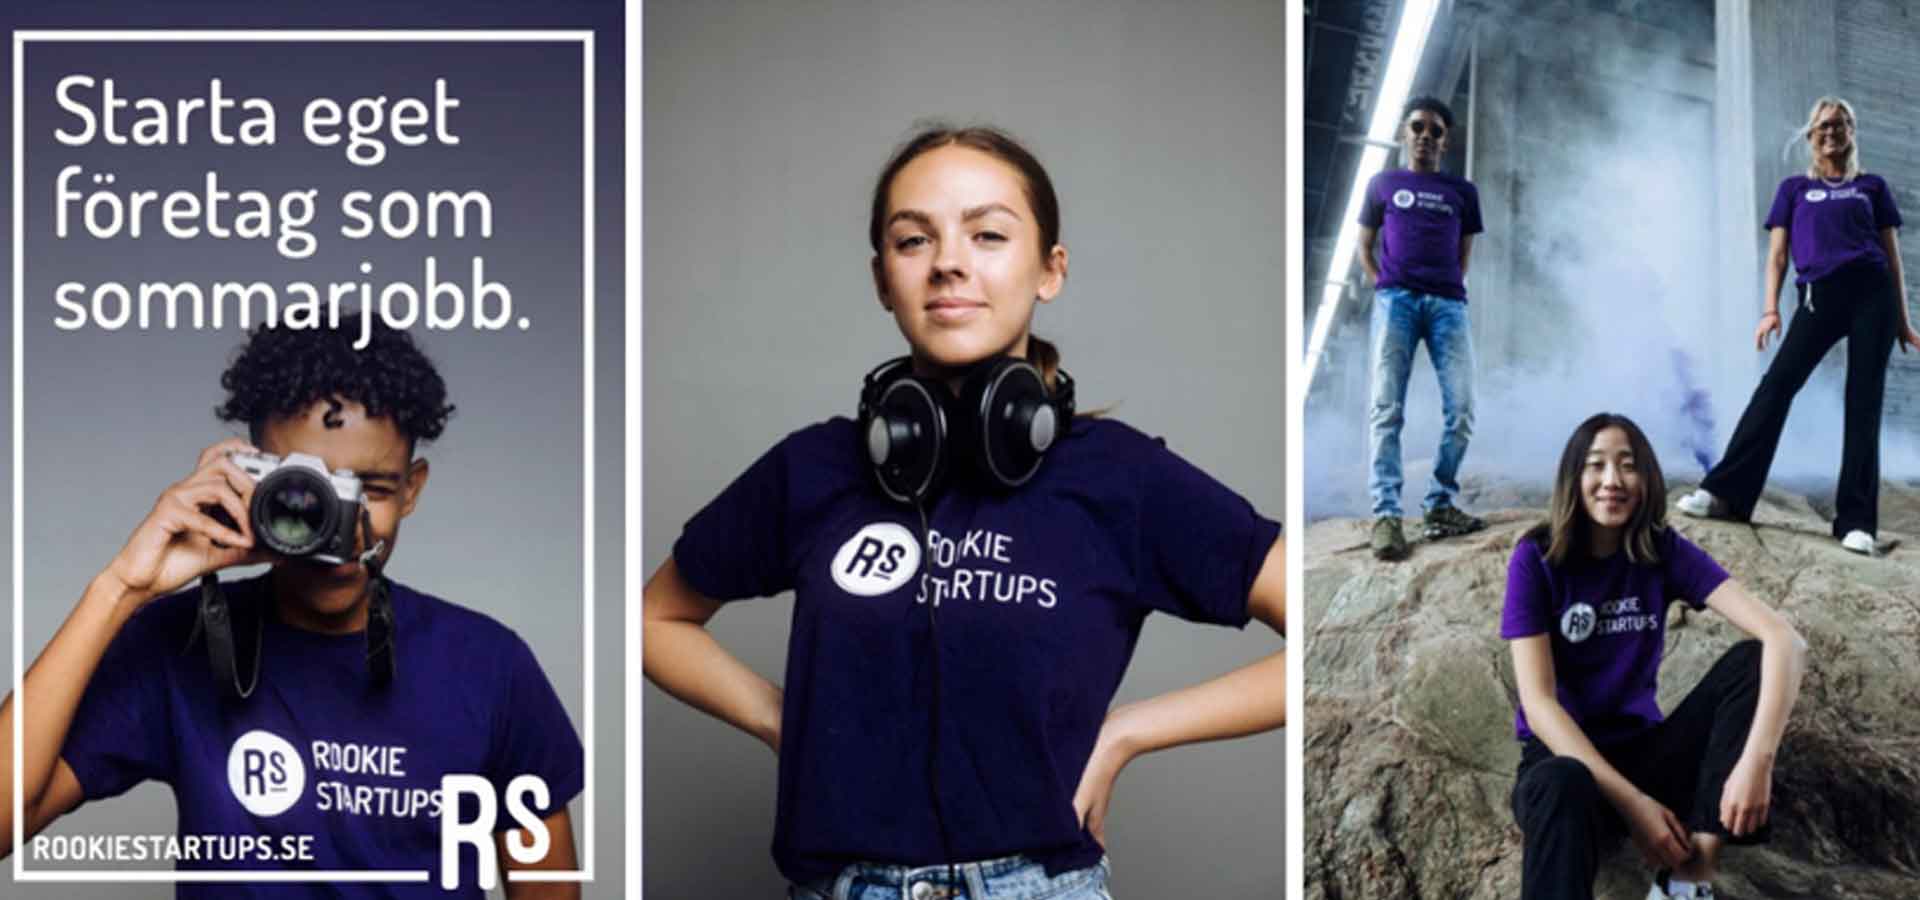 Tre bilder på tre unga personer med t-shirts där det står Rookie startups. Den ena bilden har texten "Starta eget företag som sommarjobb".